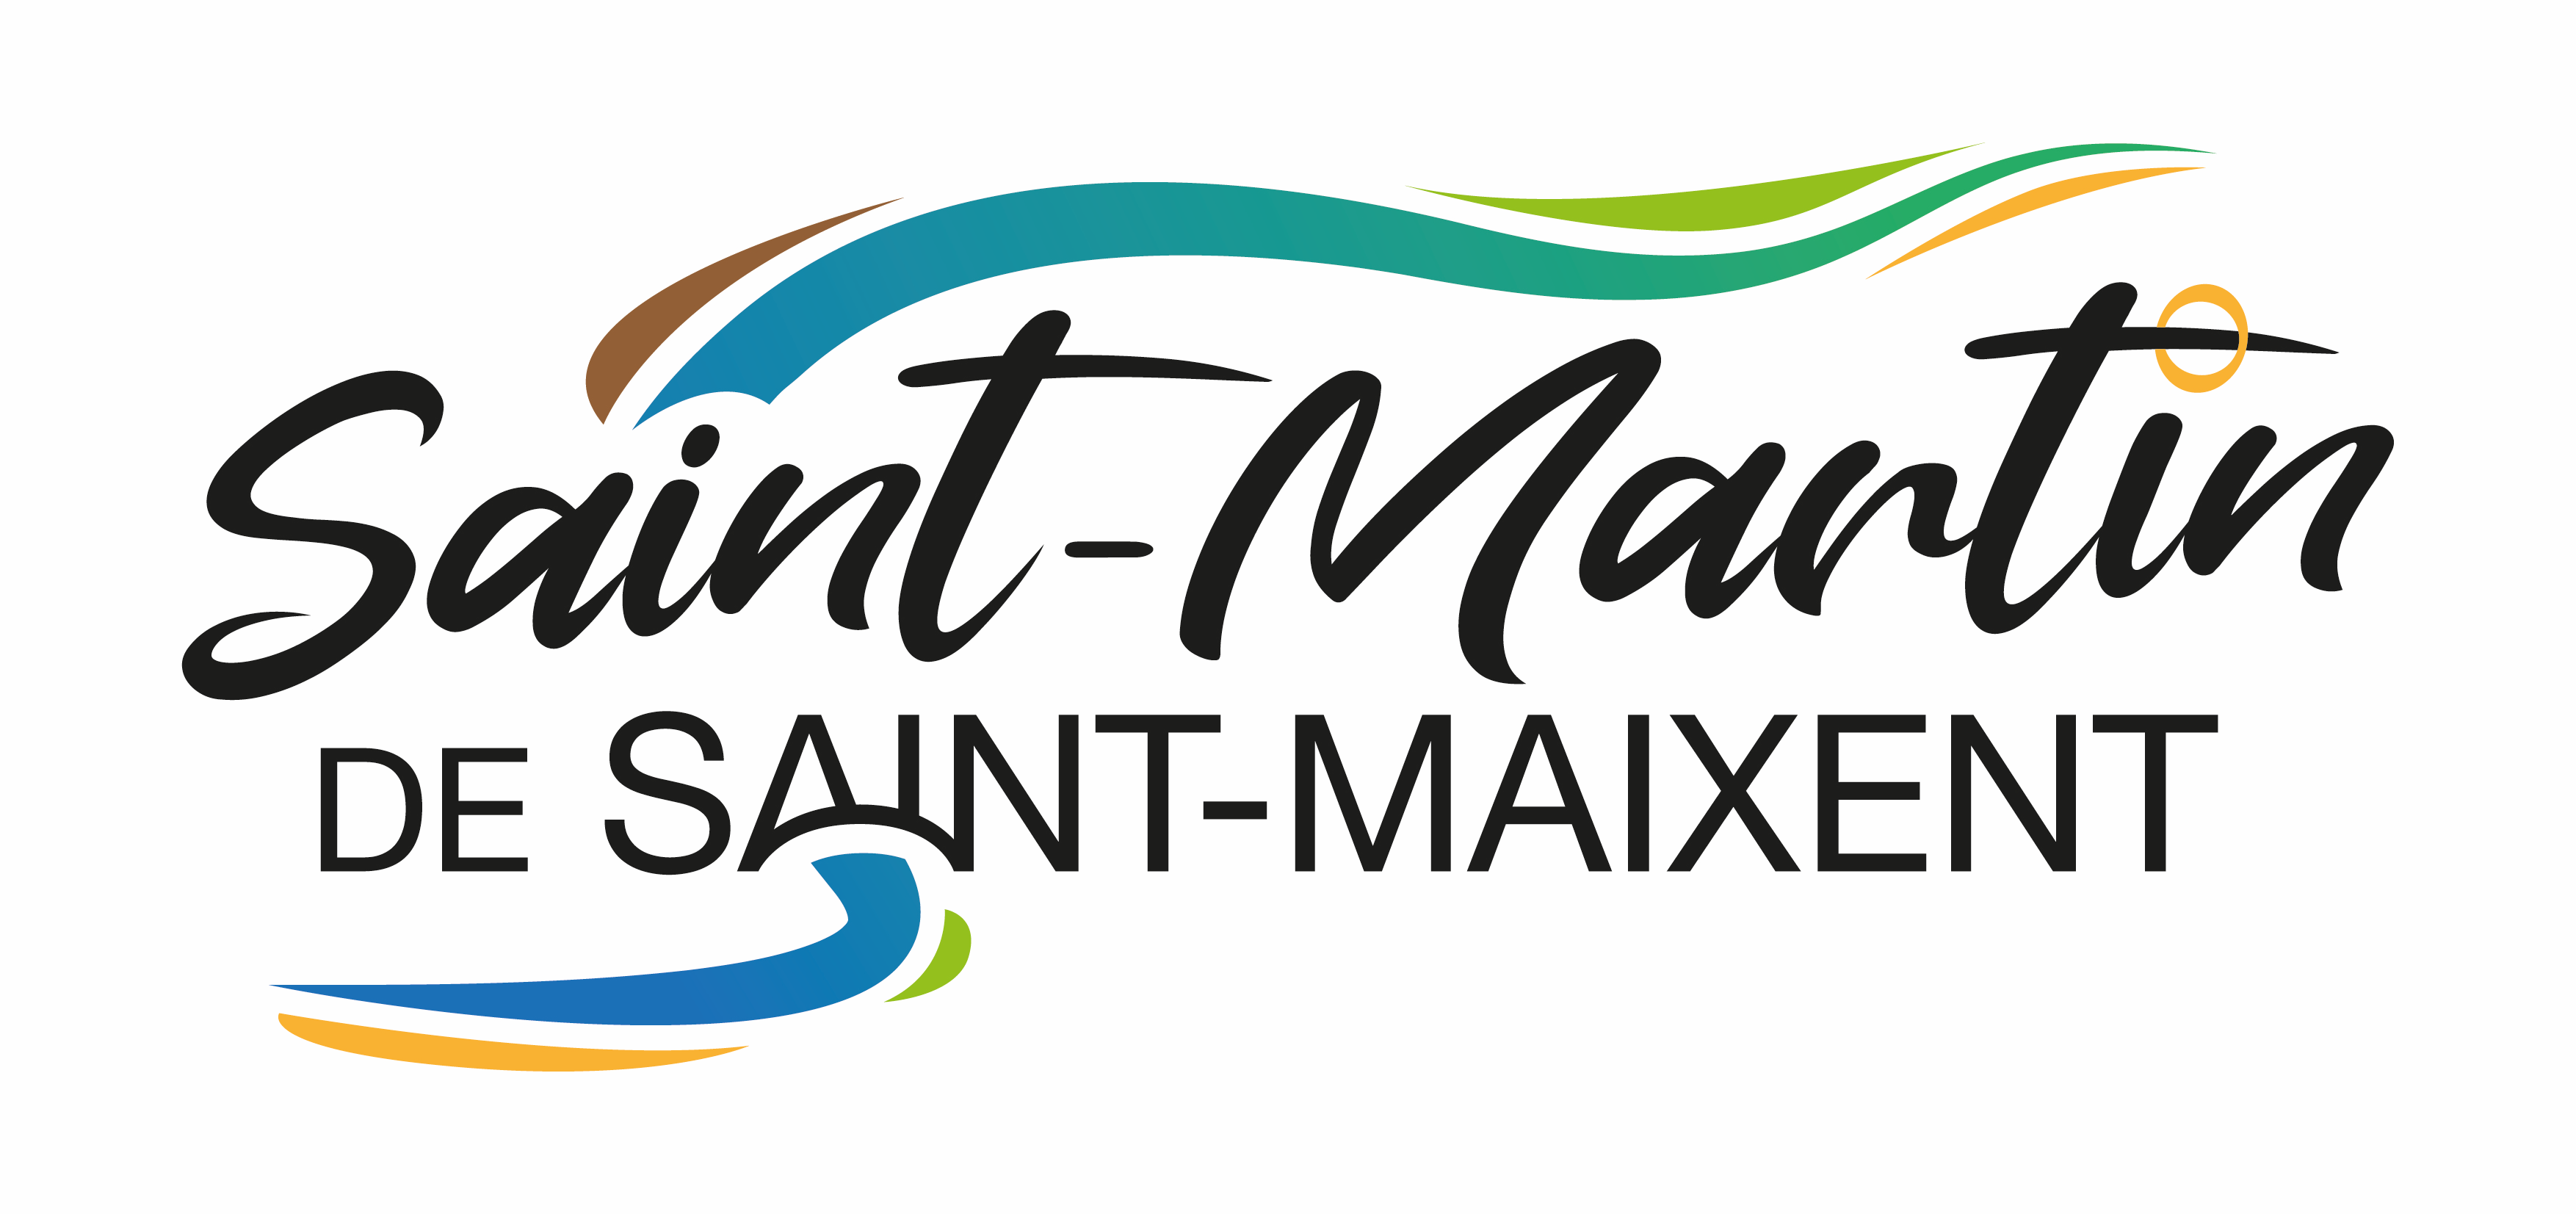 Commune de Saint-Martin-de-Saint-Maixent